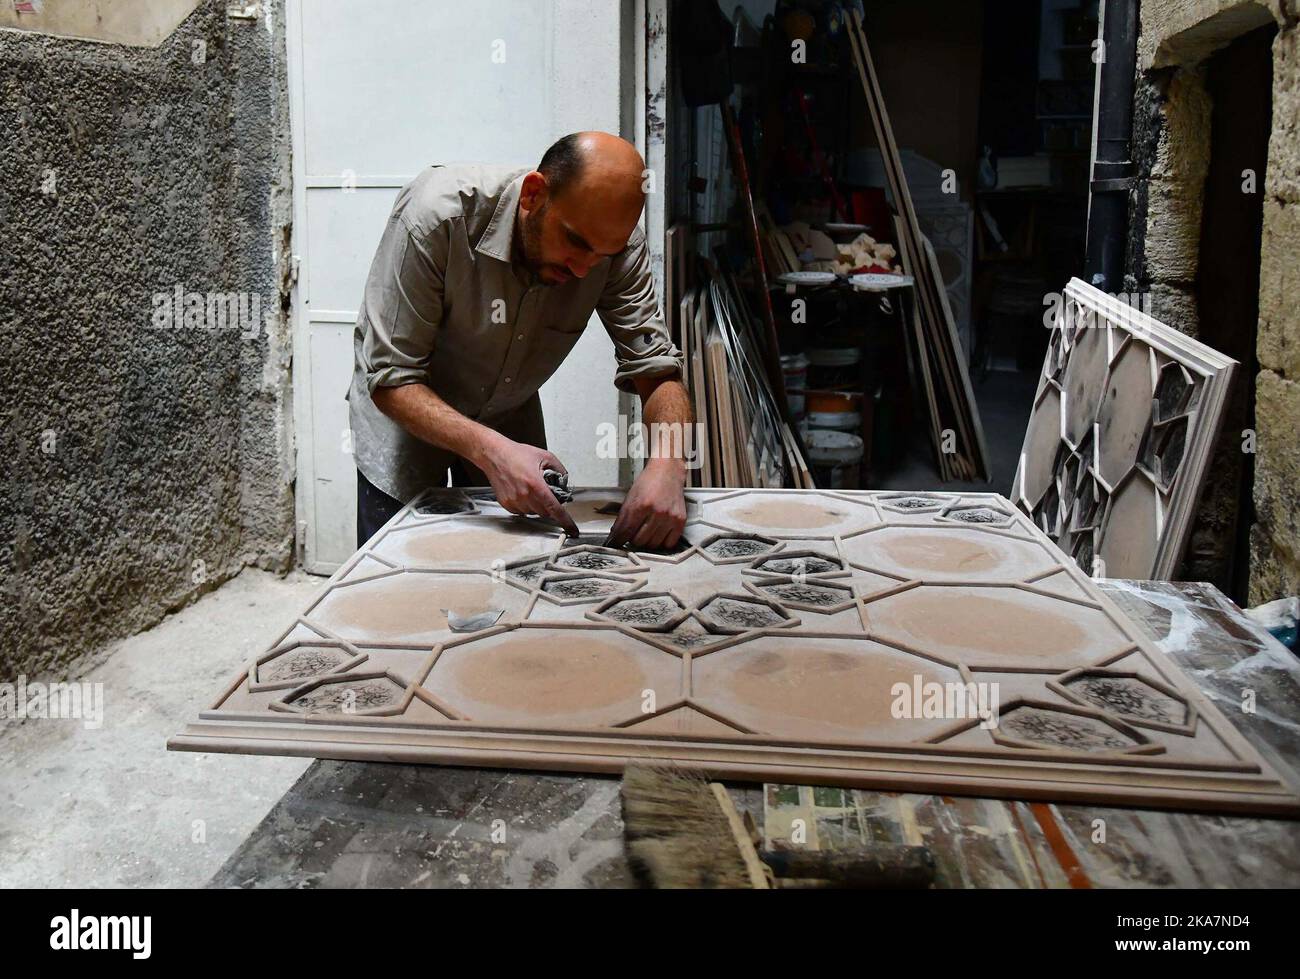 Damaskus, Syrien. 31. Oktober 2022. Ein syrischer Handwerker trägt eine zähflüssige Paste auf vorgezeichnete Muster auf einem Brett auf, um eine syrische Wand- und Deckendekoration zu schaffen, die als Damascene-Malerei oder Ajami in einer Werkstatt in Damaskus, Syrien, am 31. Oktober 2022 bekannt ist. Ajami ist ein traditionelles Handwerk, das für die Inneneinrichtung alter Häuser in Syrien verwendet wird.Quelle: Ammar Safarjalani/Xinhua/Alamy Live News Stockfoto